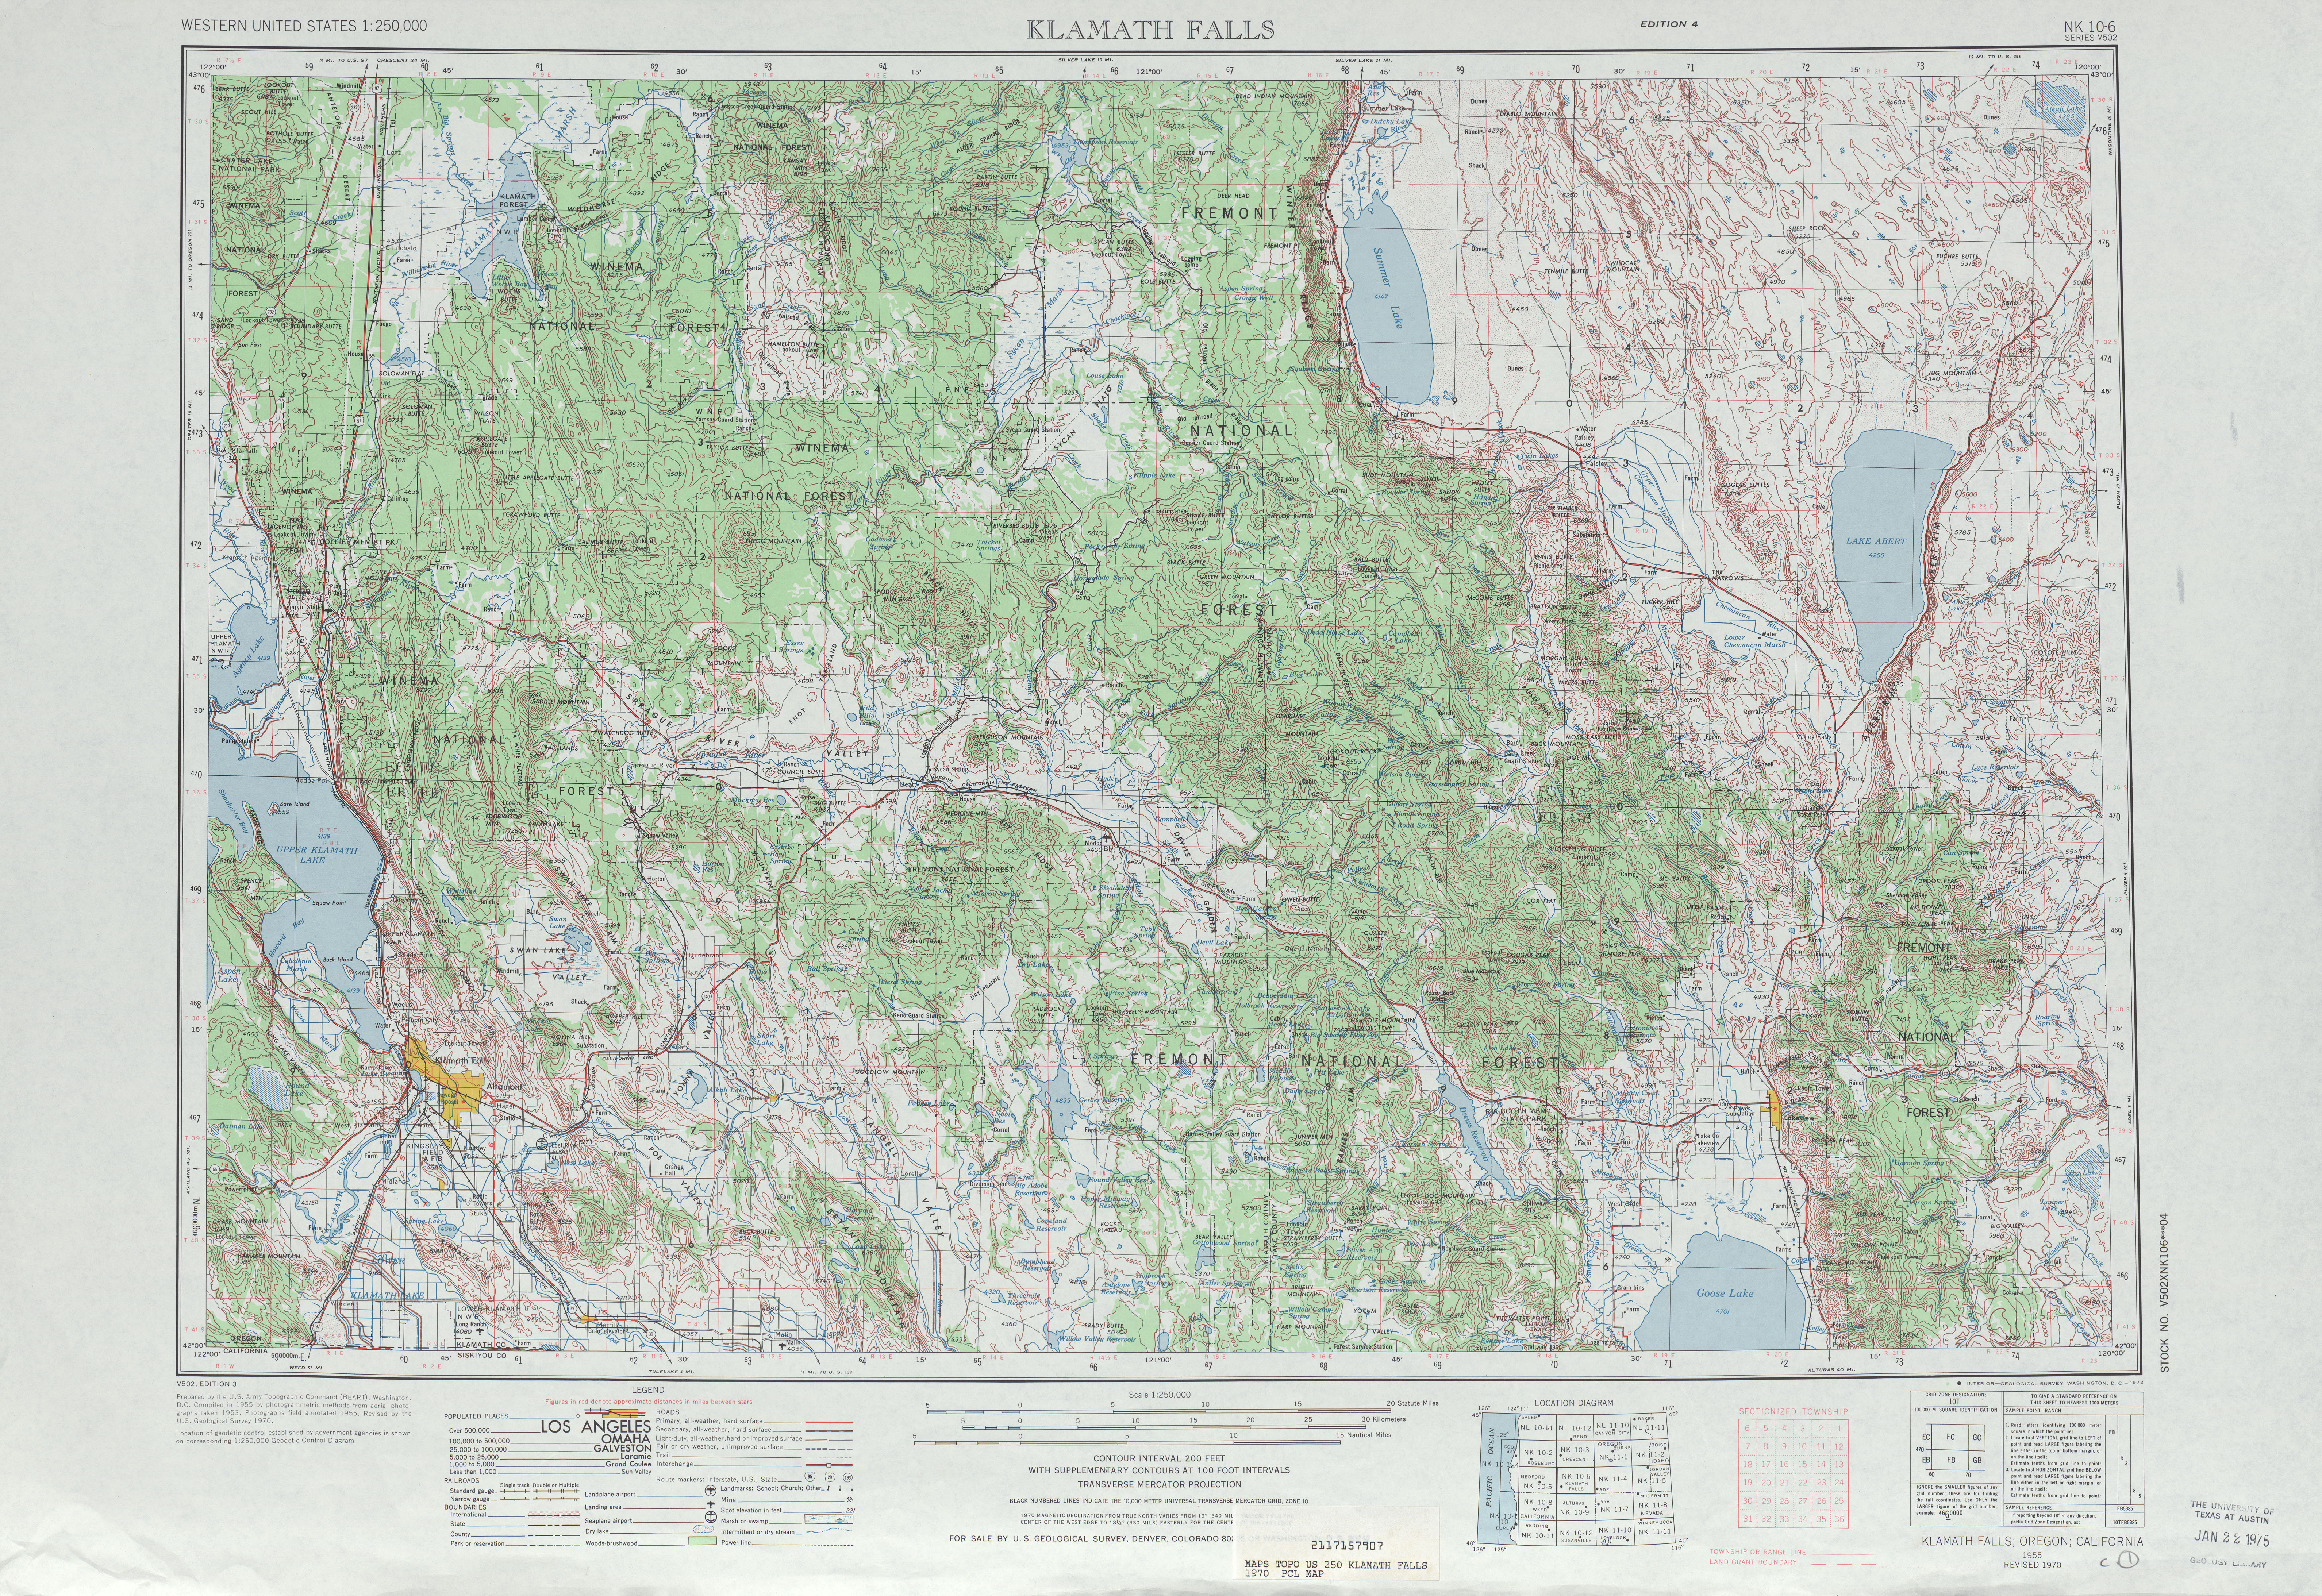 Hoja Klamath Falls del Mapa Topográfico de los Estados Unidos 1970